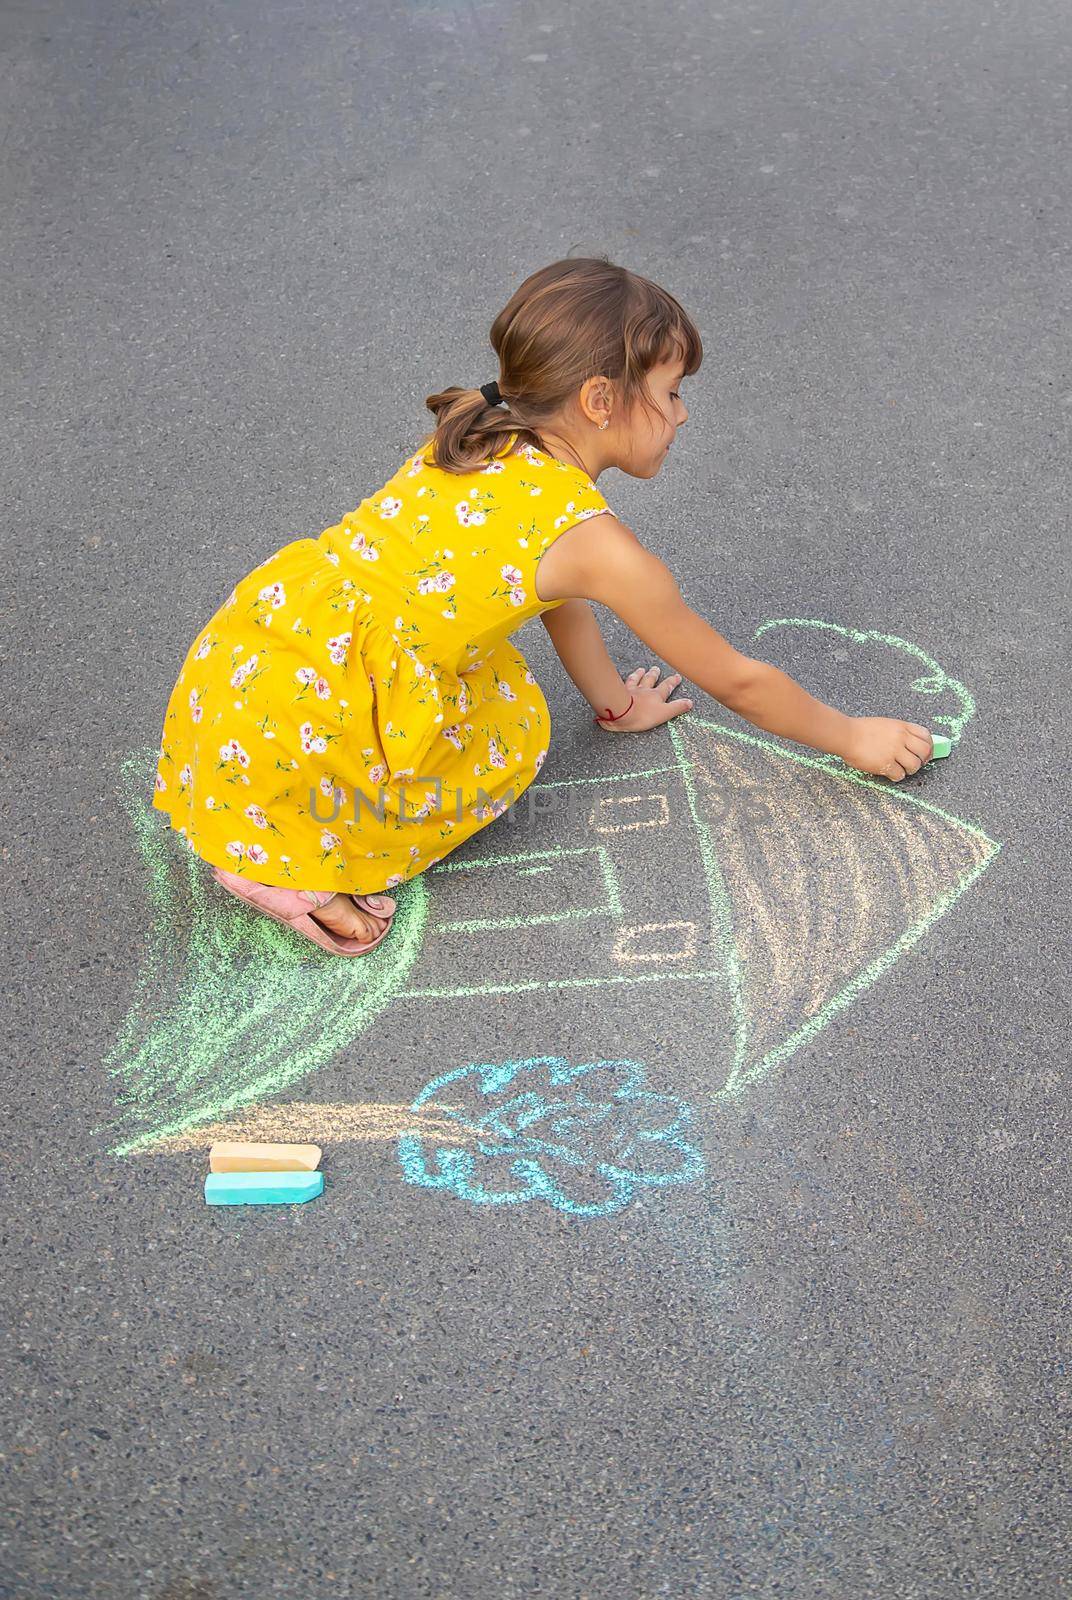 The child draws a house on the asphalt. Selective focus. kid.